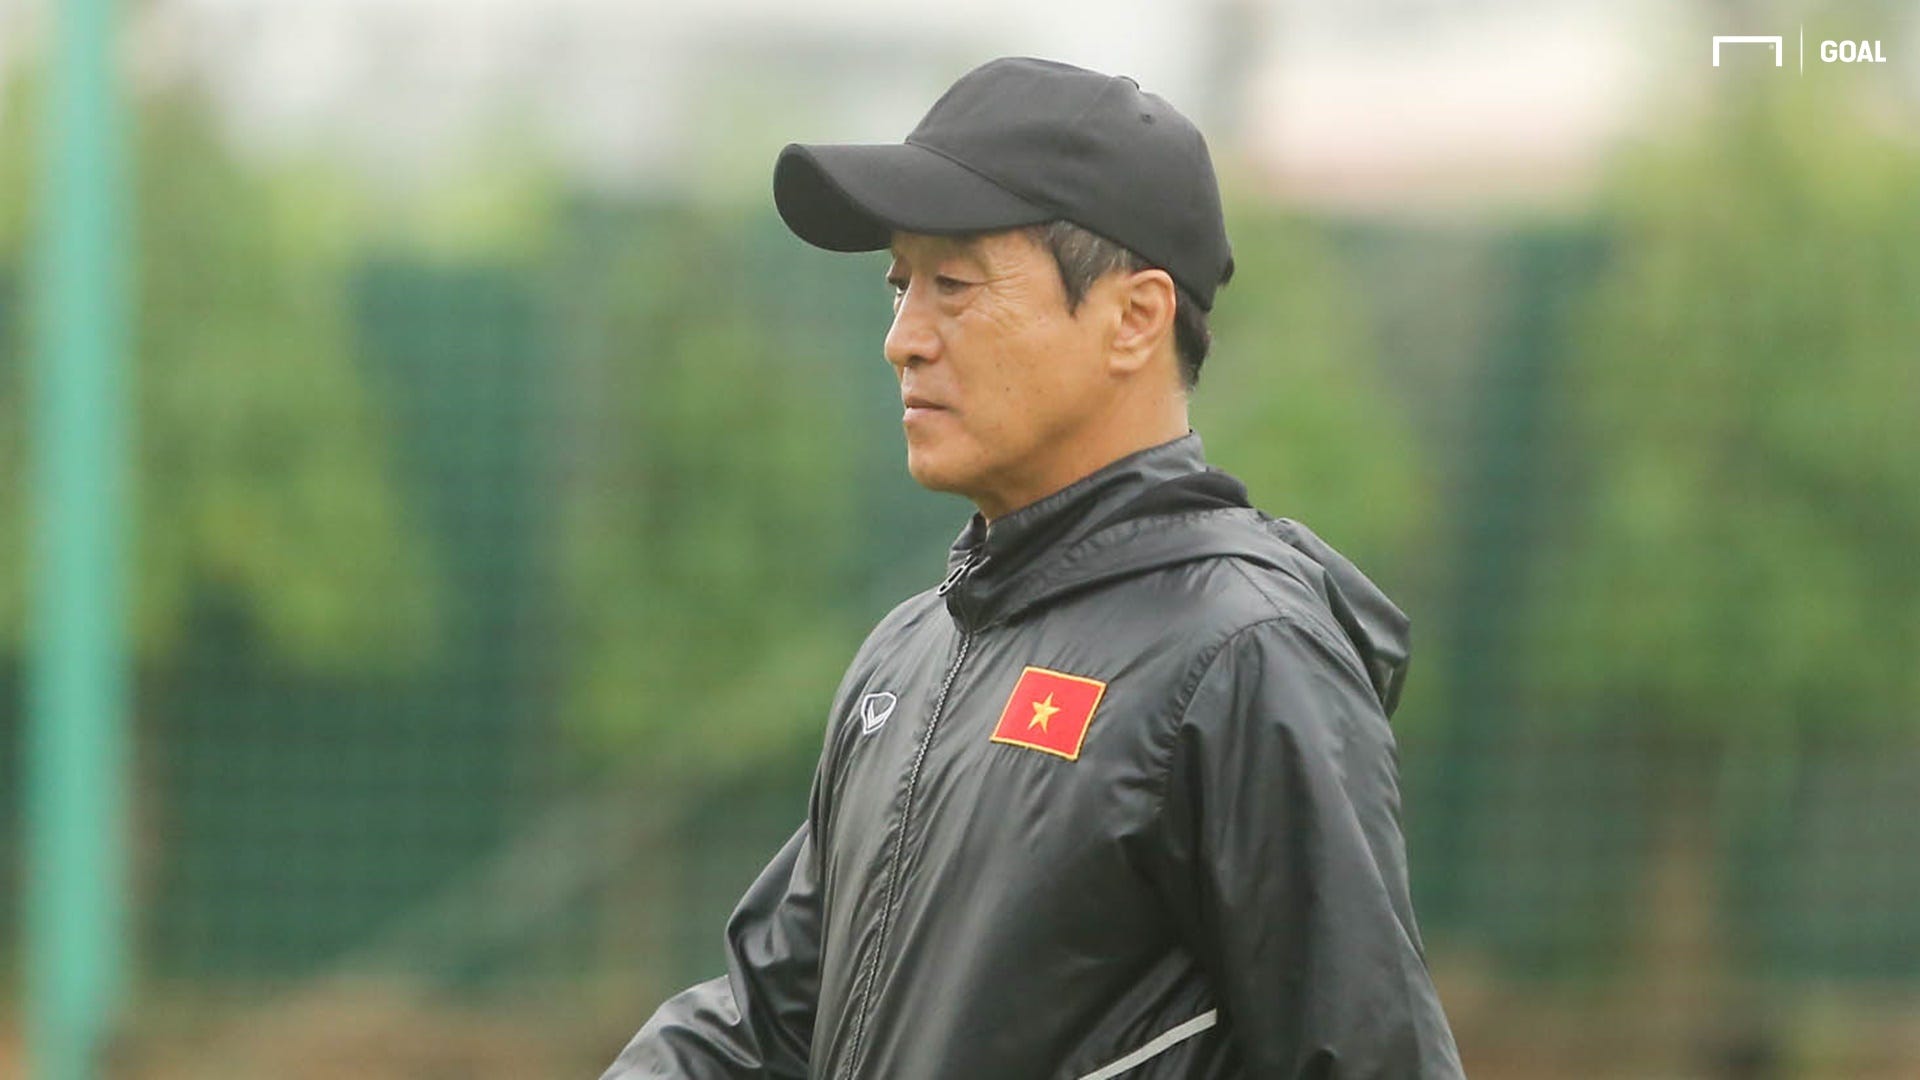 ĐT Việt Nam) Lee Young-jin: Bí mật thú vị về trợ thủ đắc lực của HLV Park  Hang-seo  Việt Nam